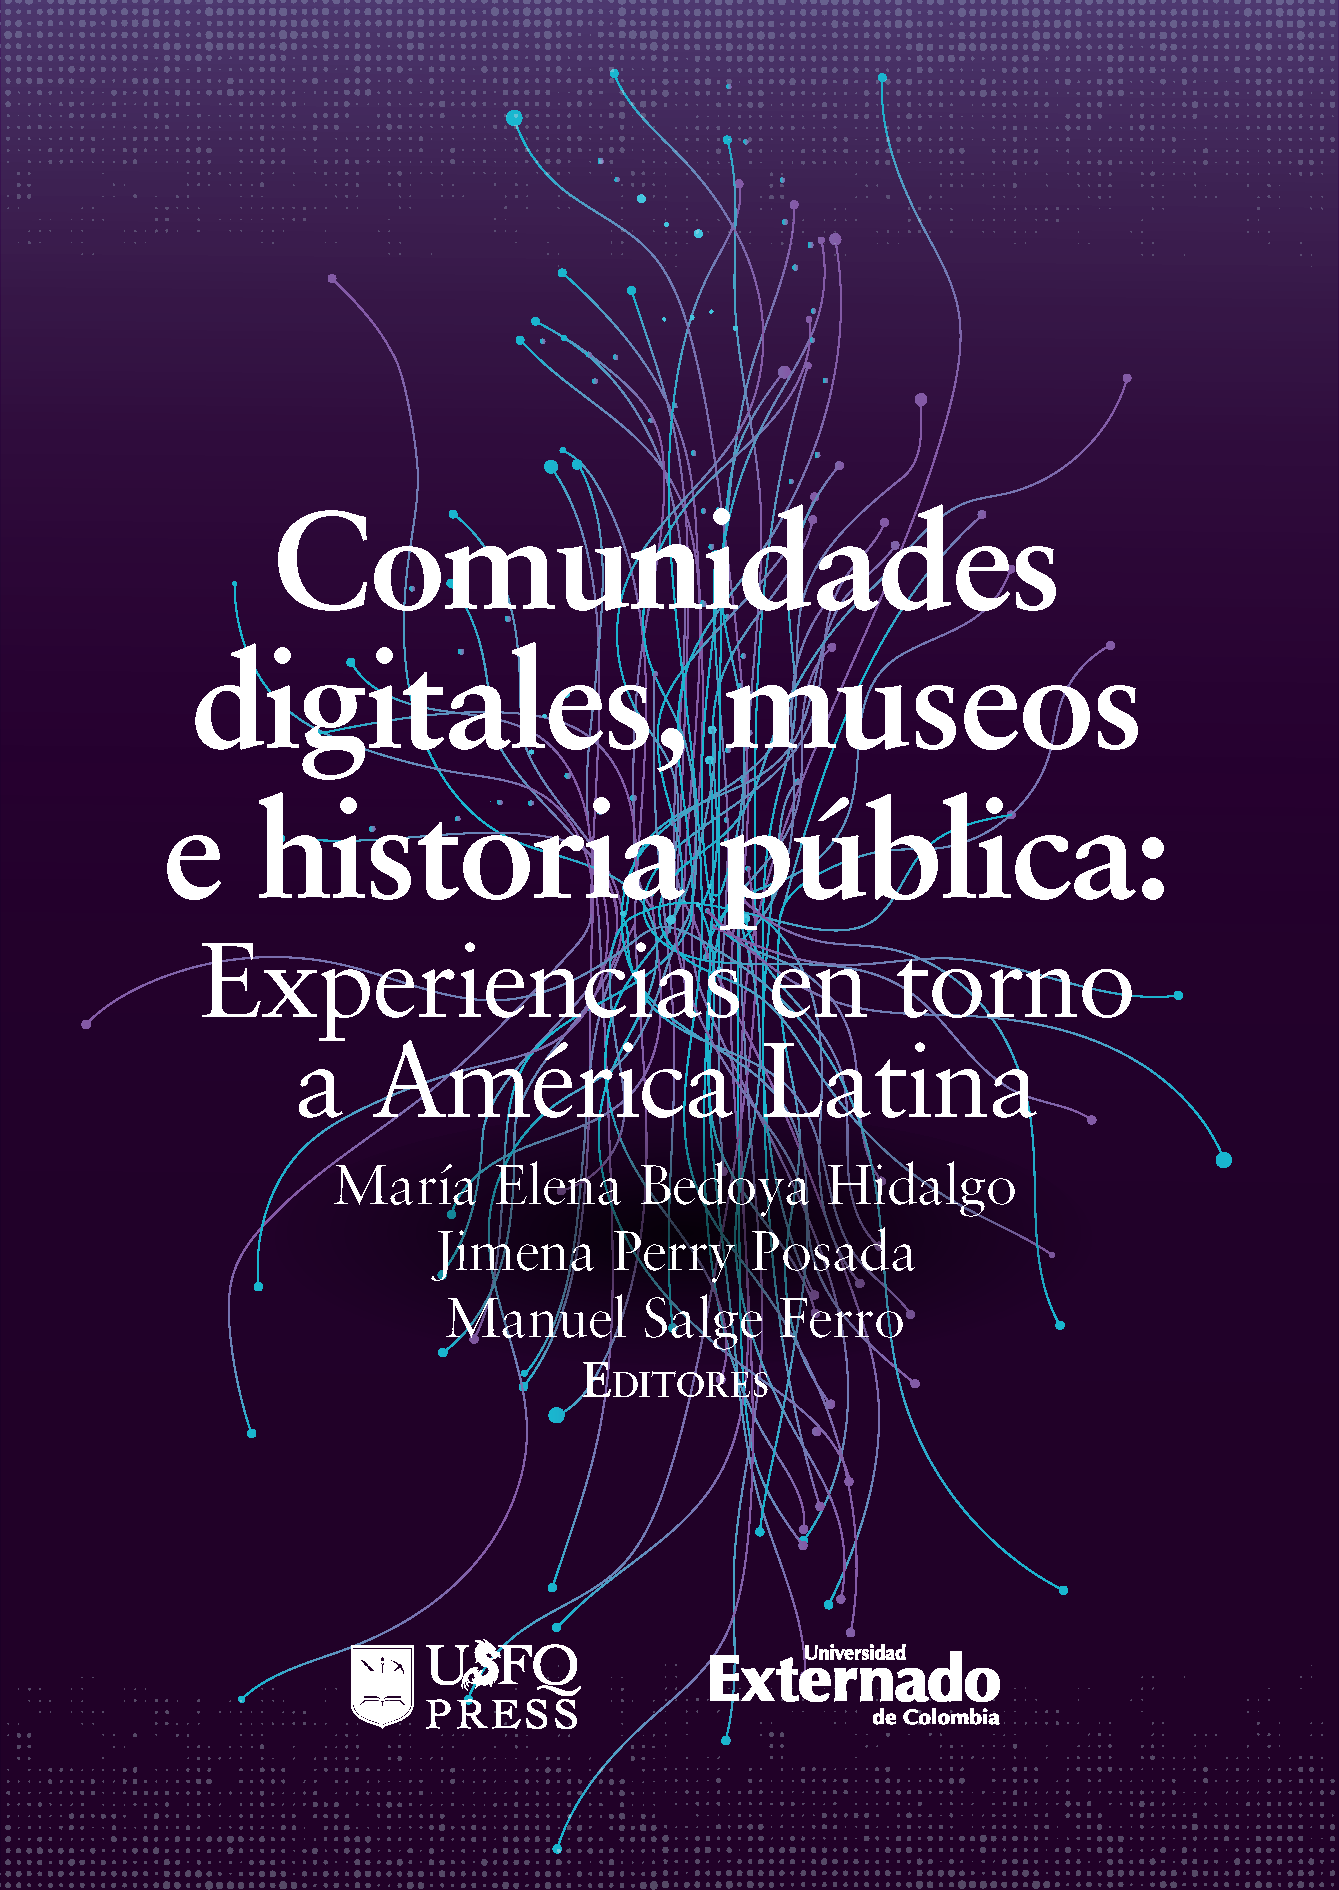 Imagen de portada del libro Comunidades digitales, museos e historia pública